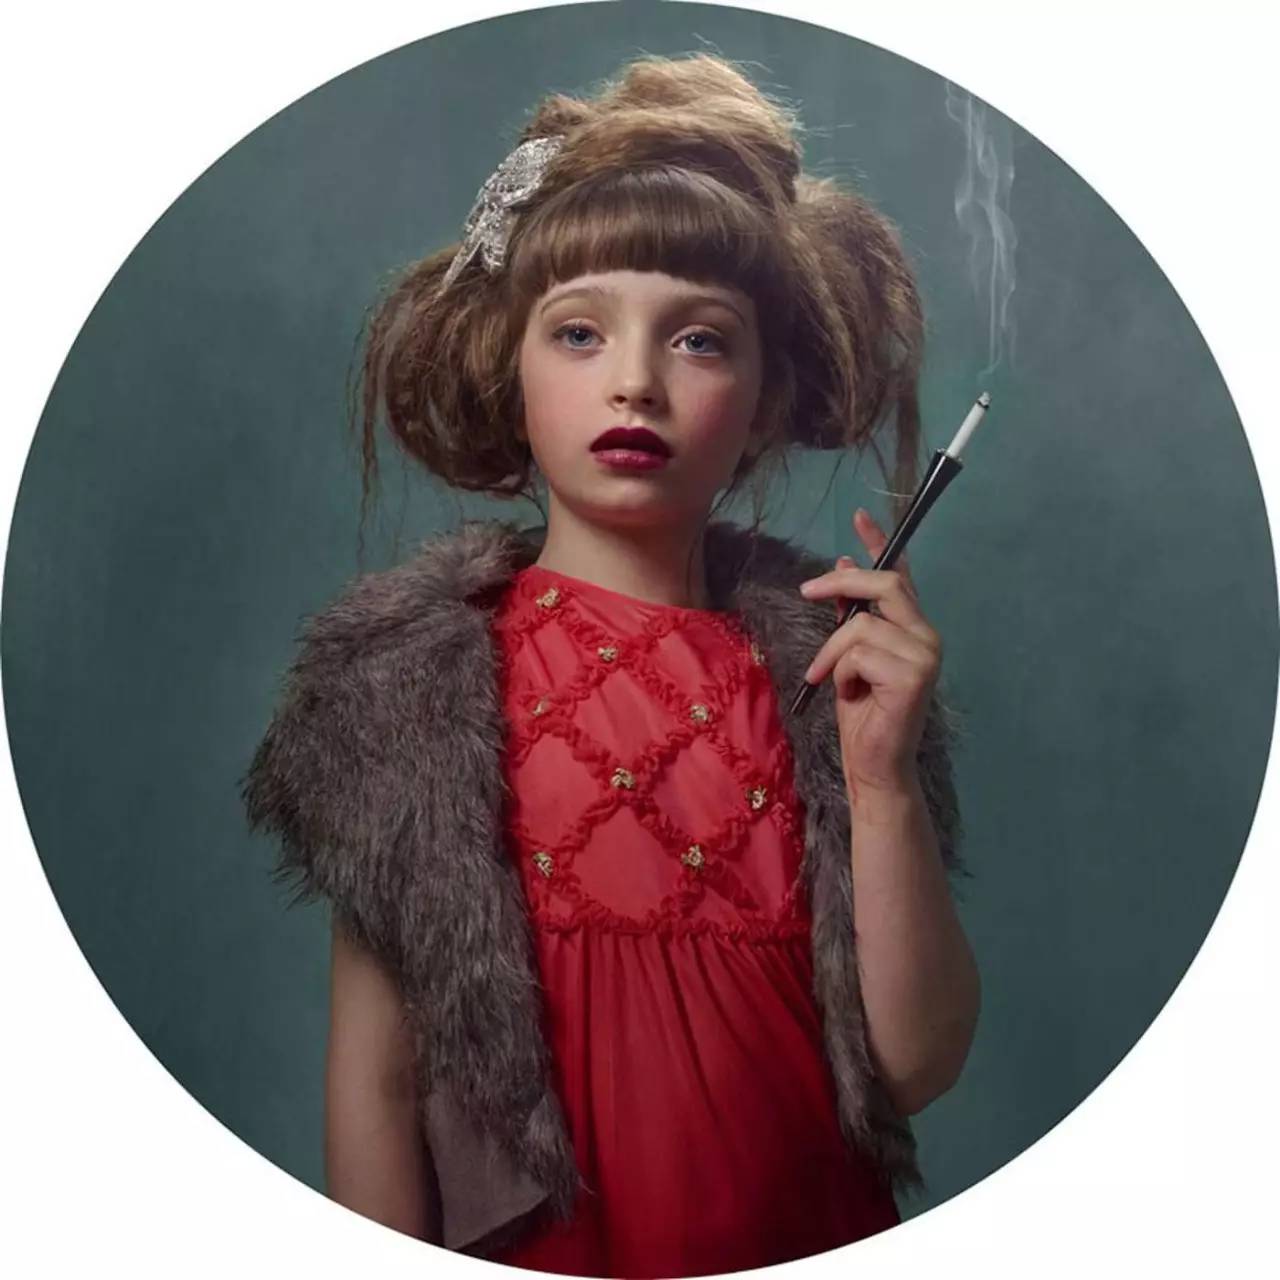 小女孩抽烟表情包图片